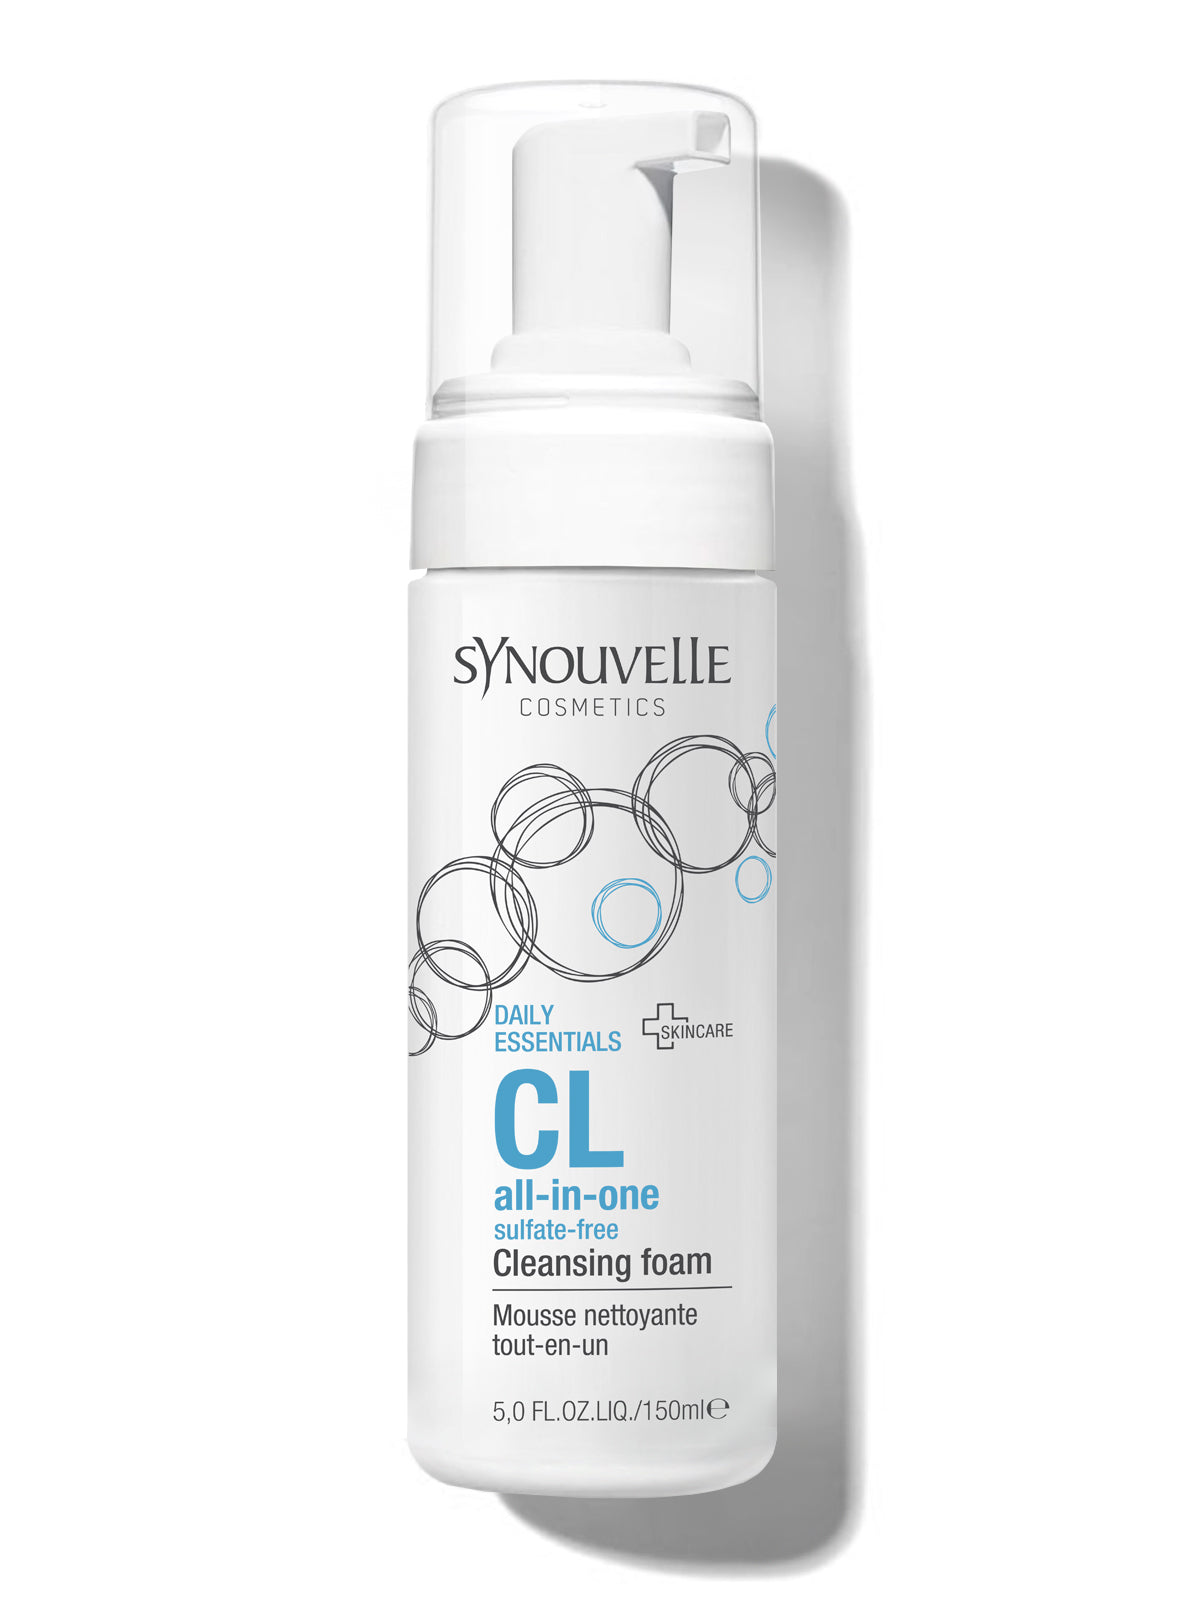 CL all-in-one cleansing foam, Reinigungsschaum Gesicht | SYNOUVELLE Cosmeceuticals